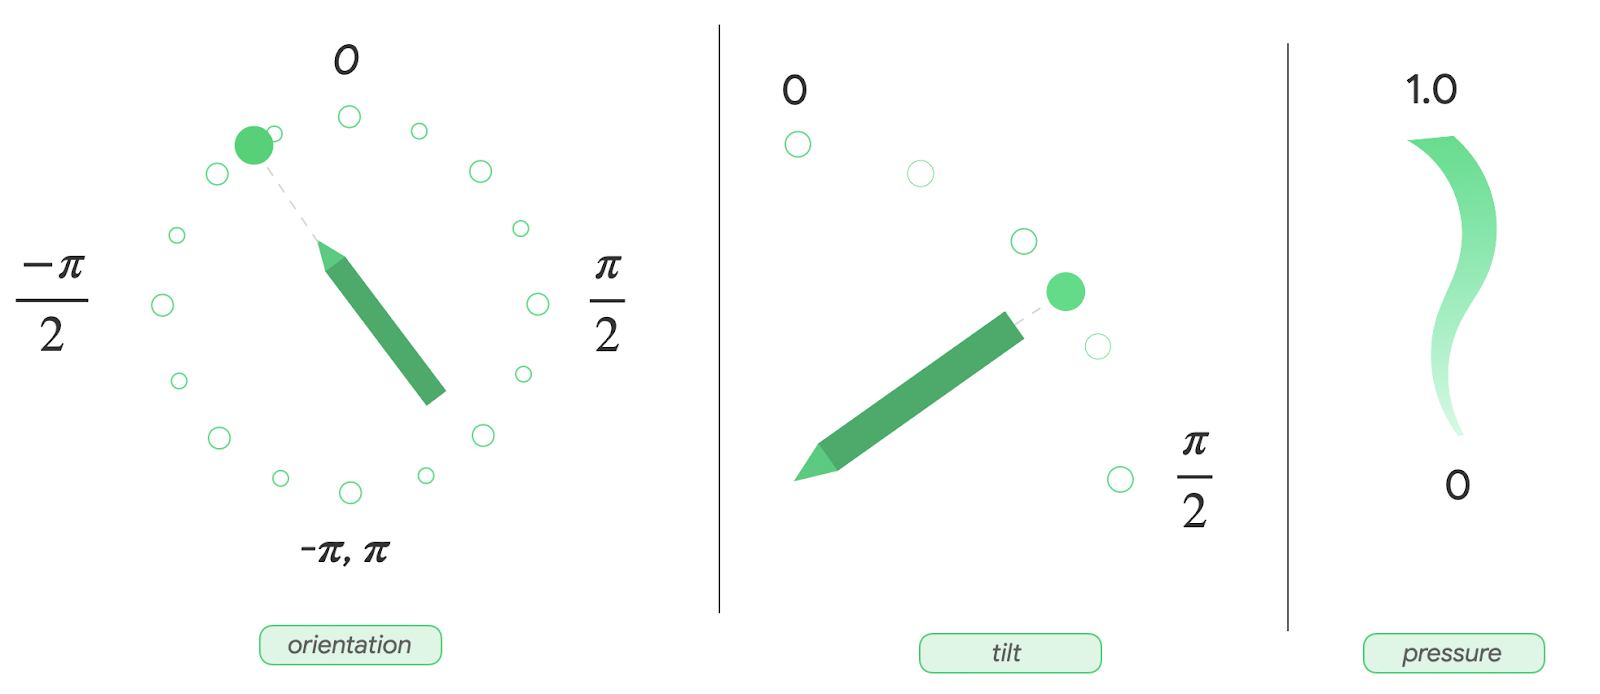 Una vista de panel de las métricas de orientación, inclinación y presión